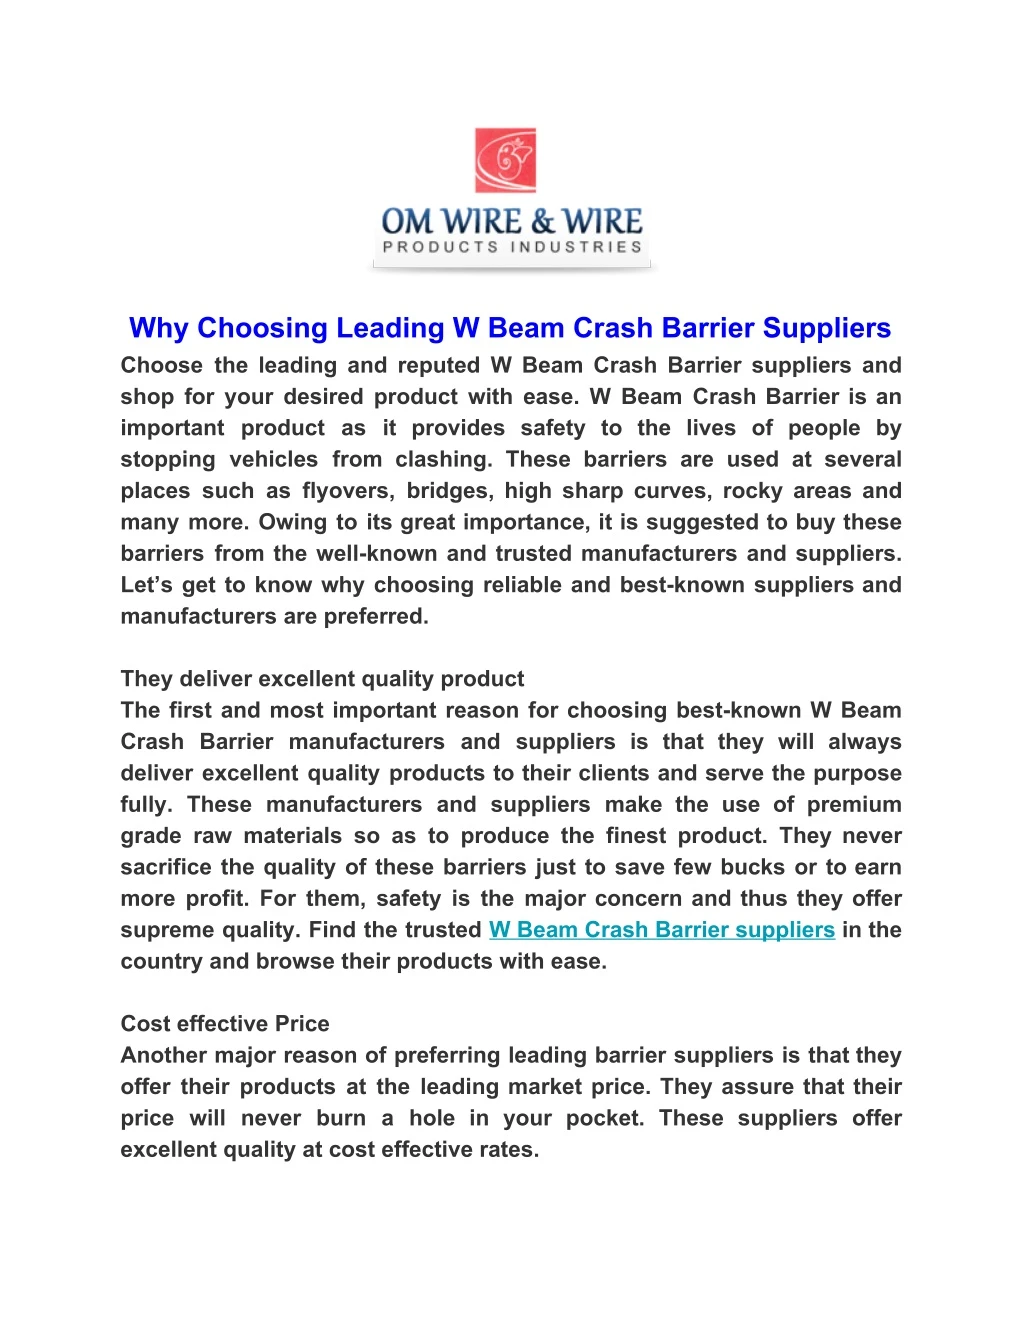 why choosing leading w beam crash barrier